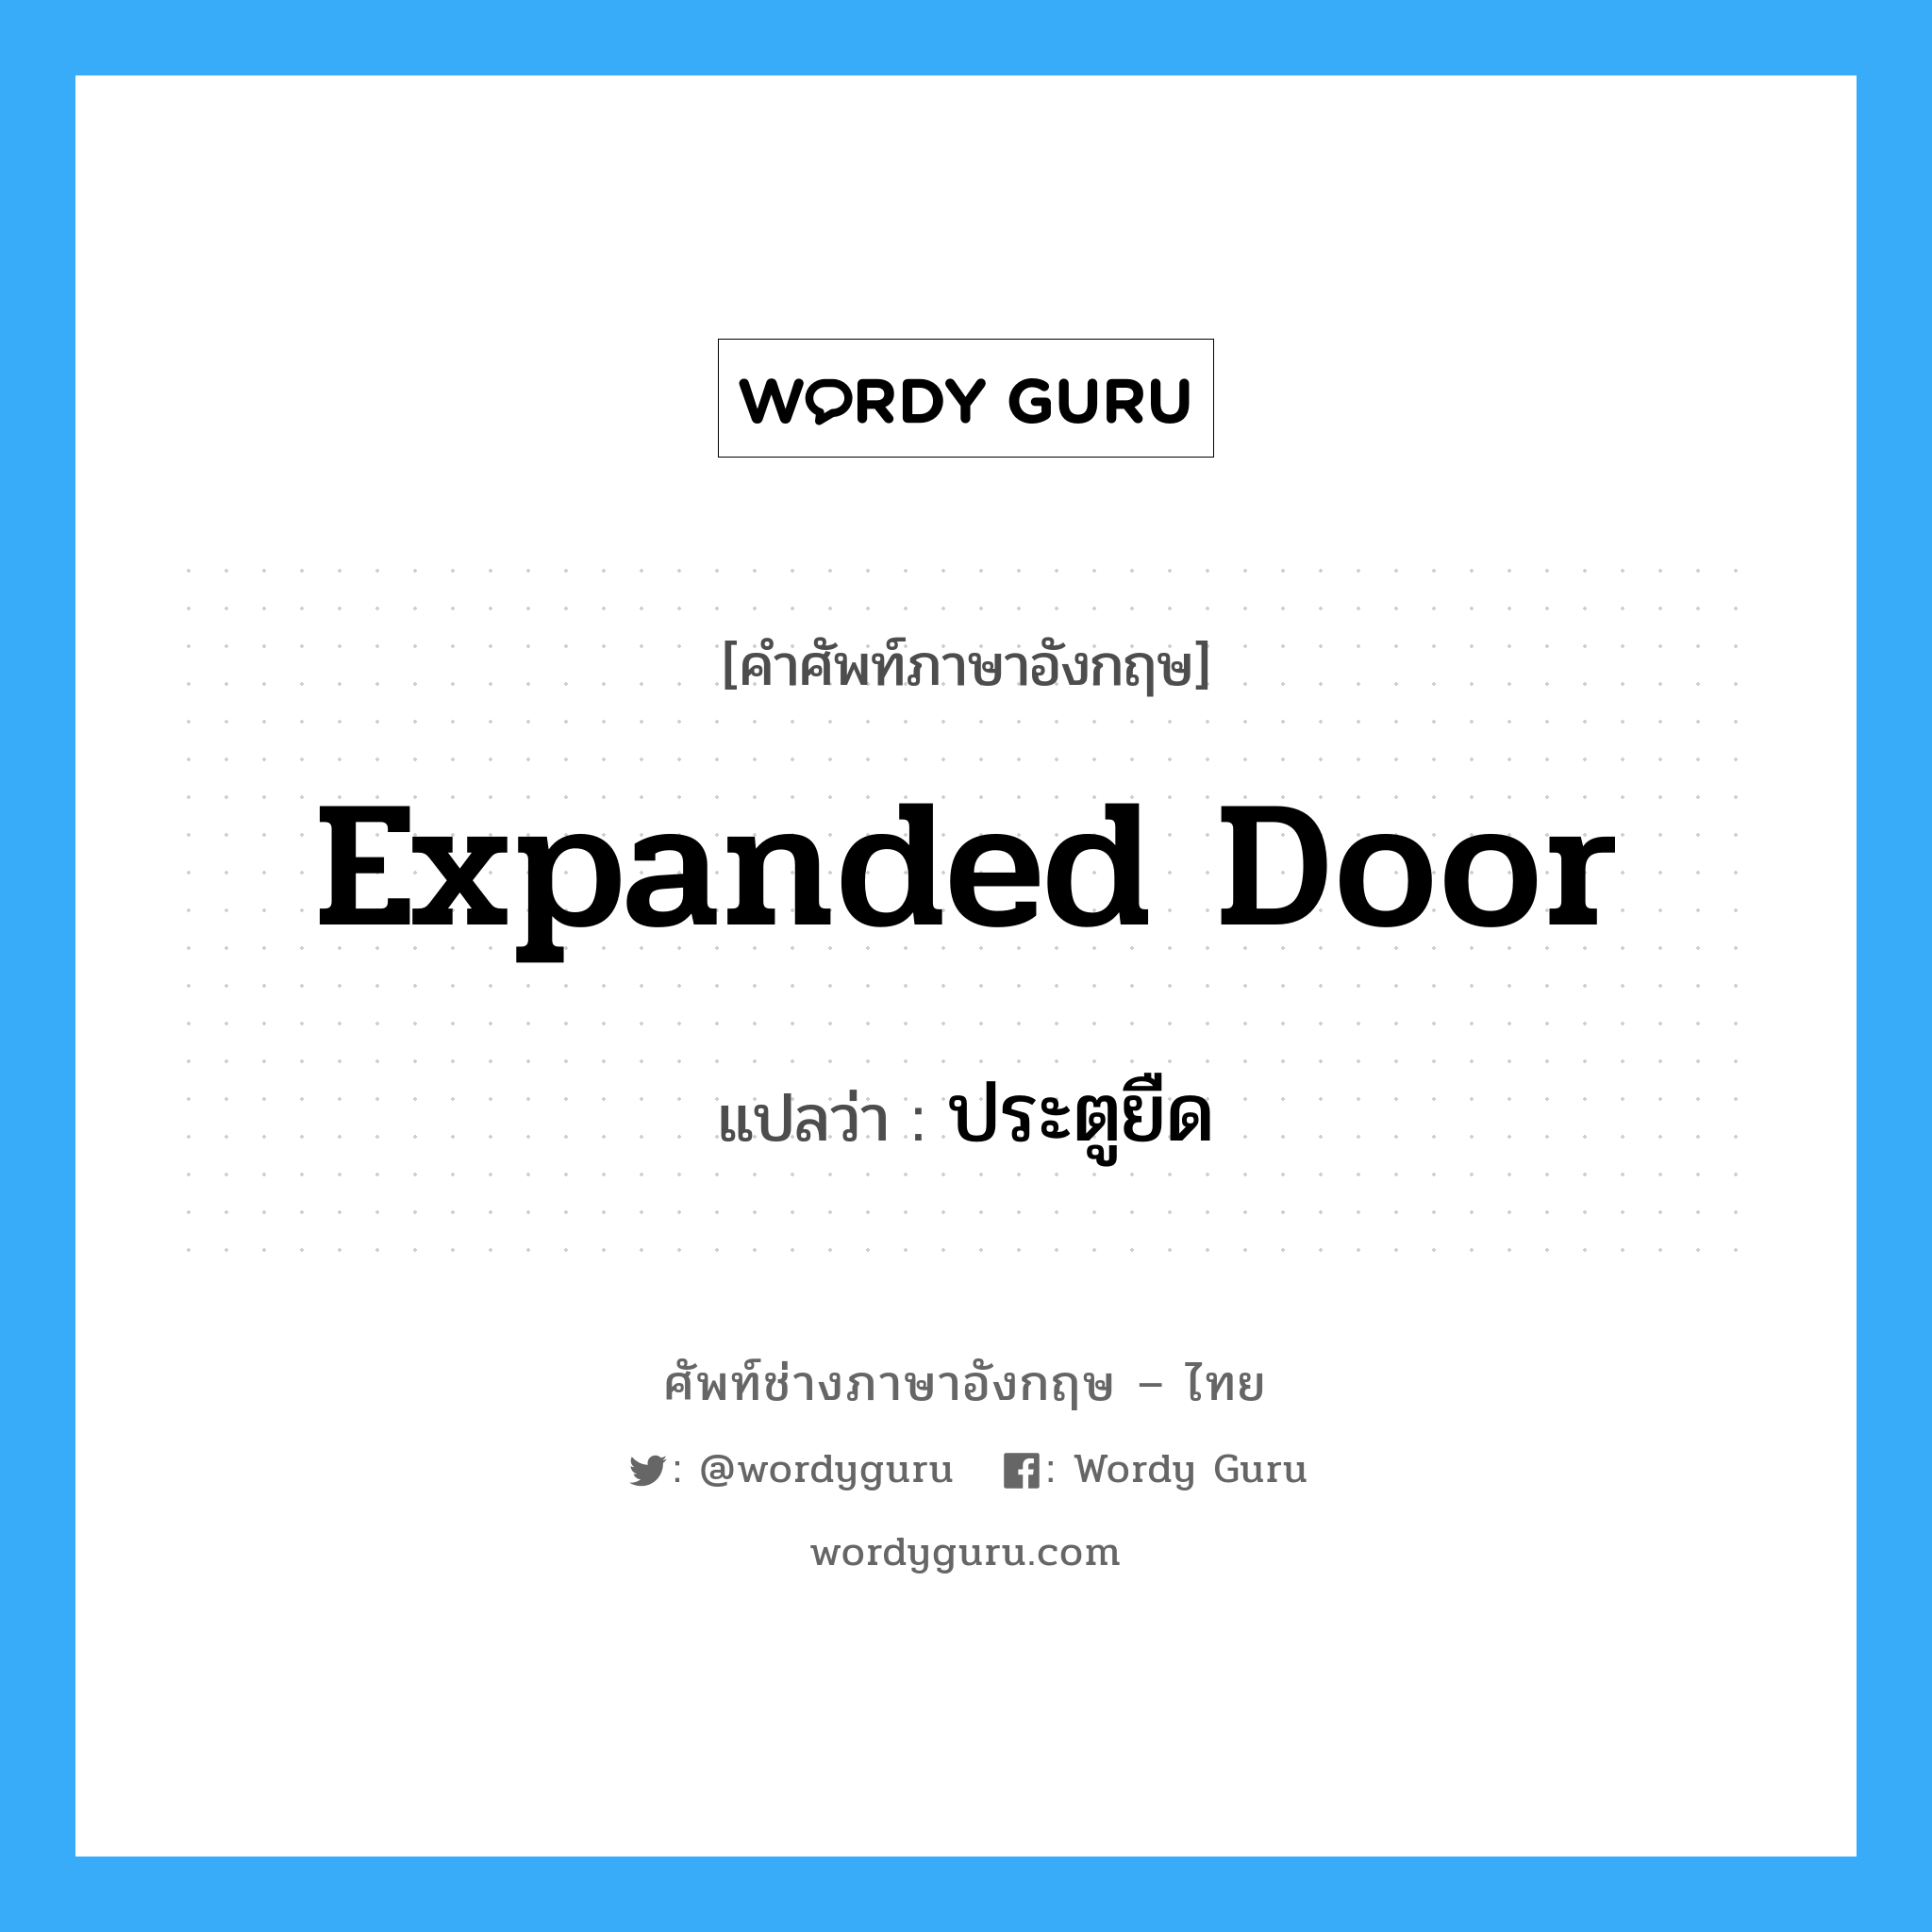 ประตูยืด ภาษาอังกฤษ?, คำศัพท์ช่างภาษาอังกฤษ - ไทย ประตูยืด คำศัพท์ภาษาอังกฤษ ประตูยืด แปลว่า expanded door